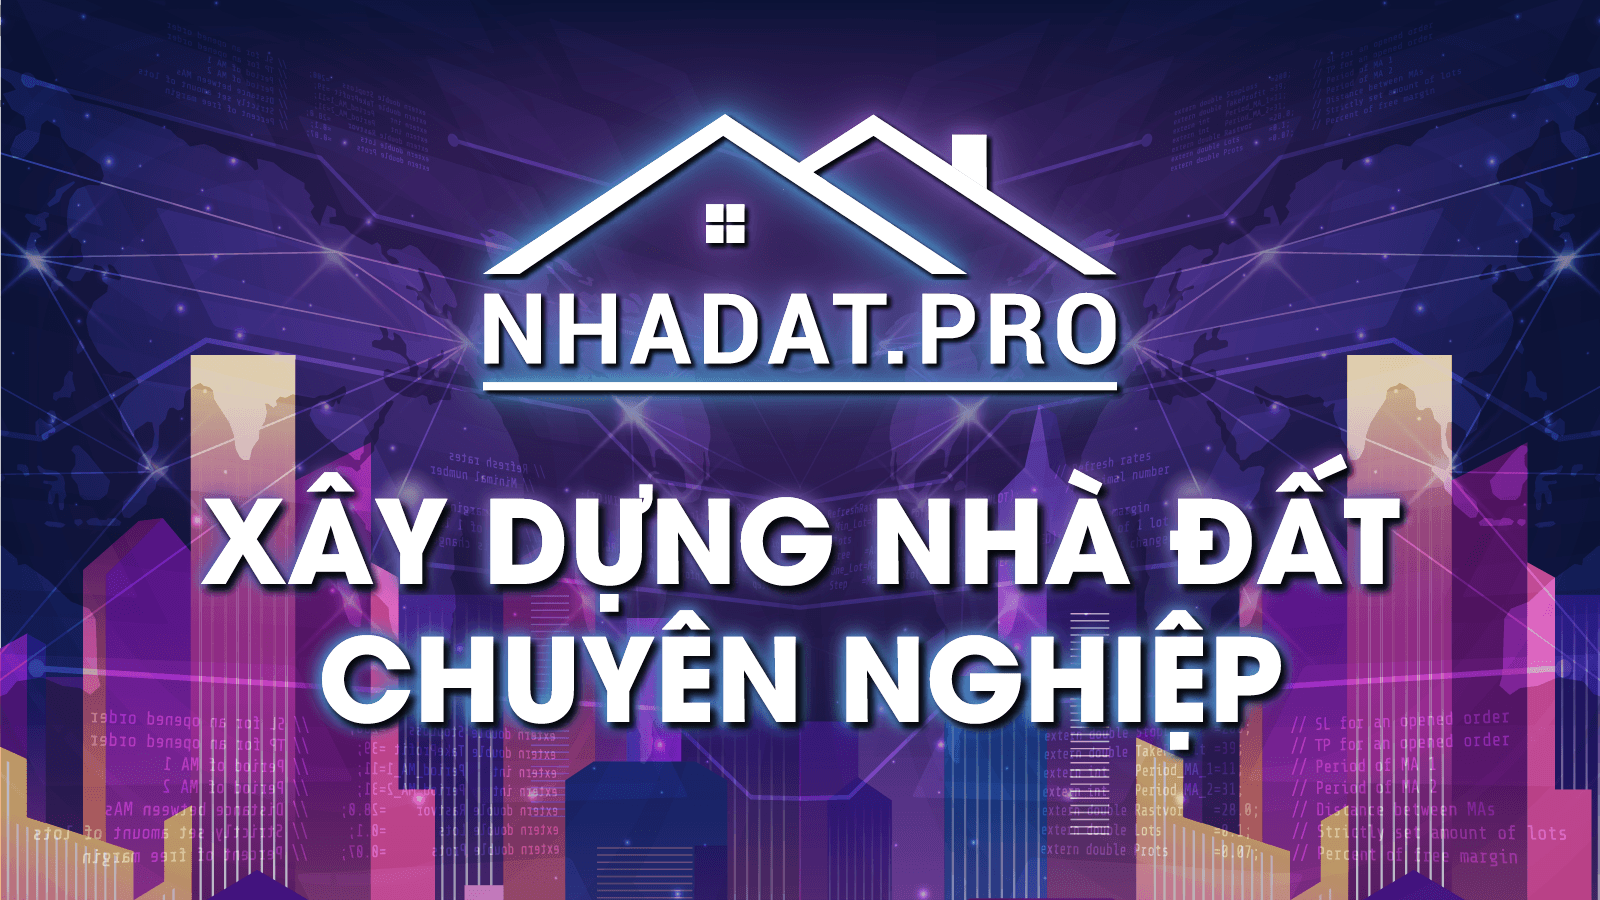 Danh mục xây dựng Nhadat.pro